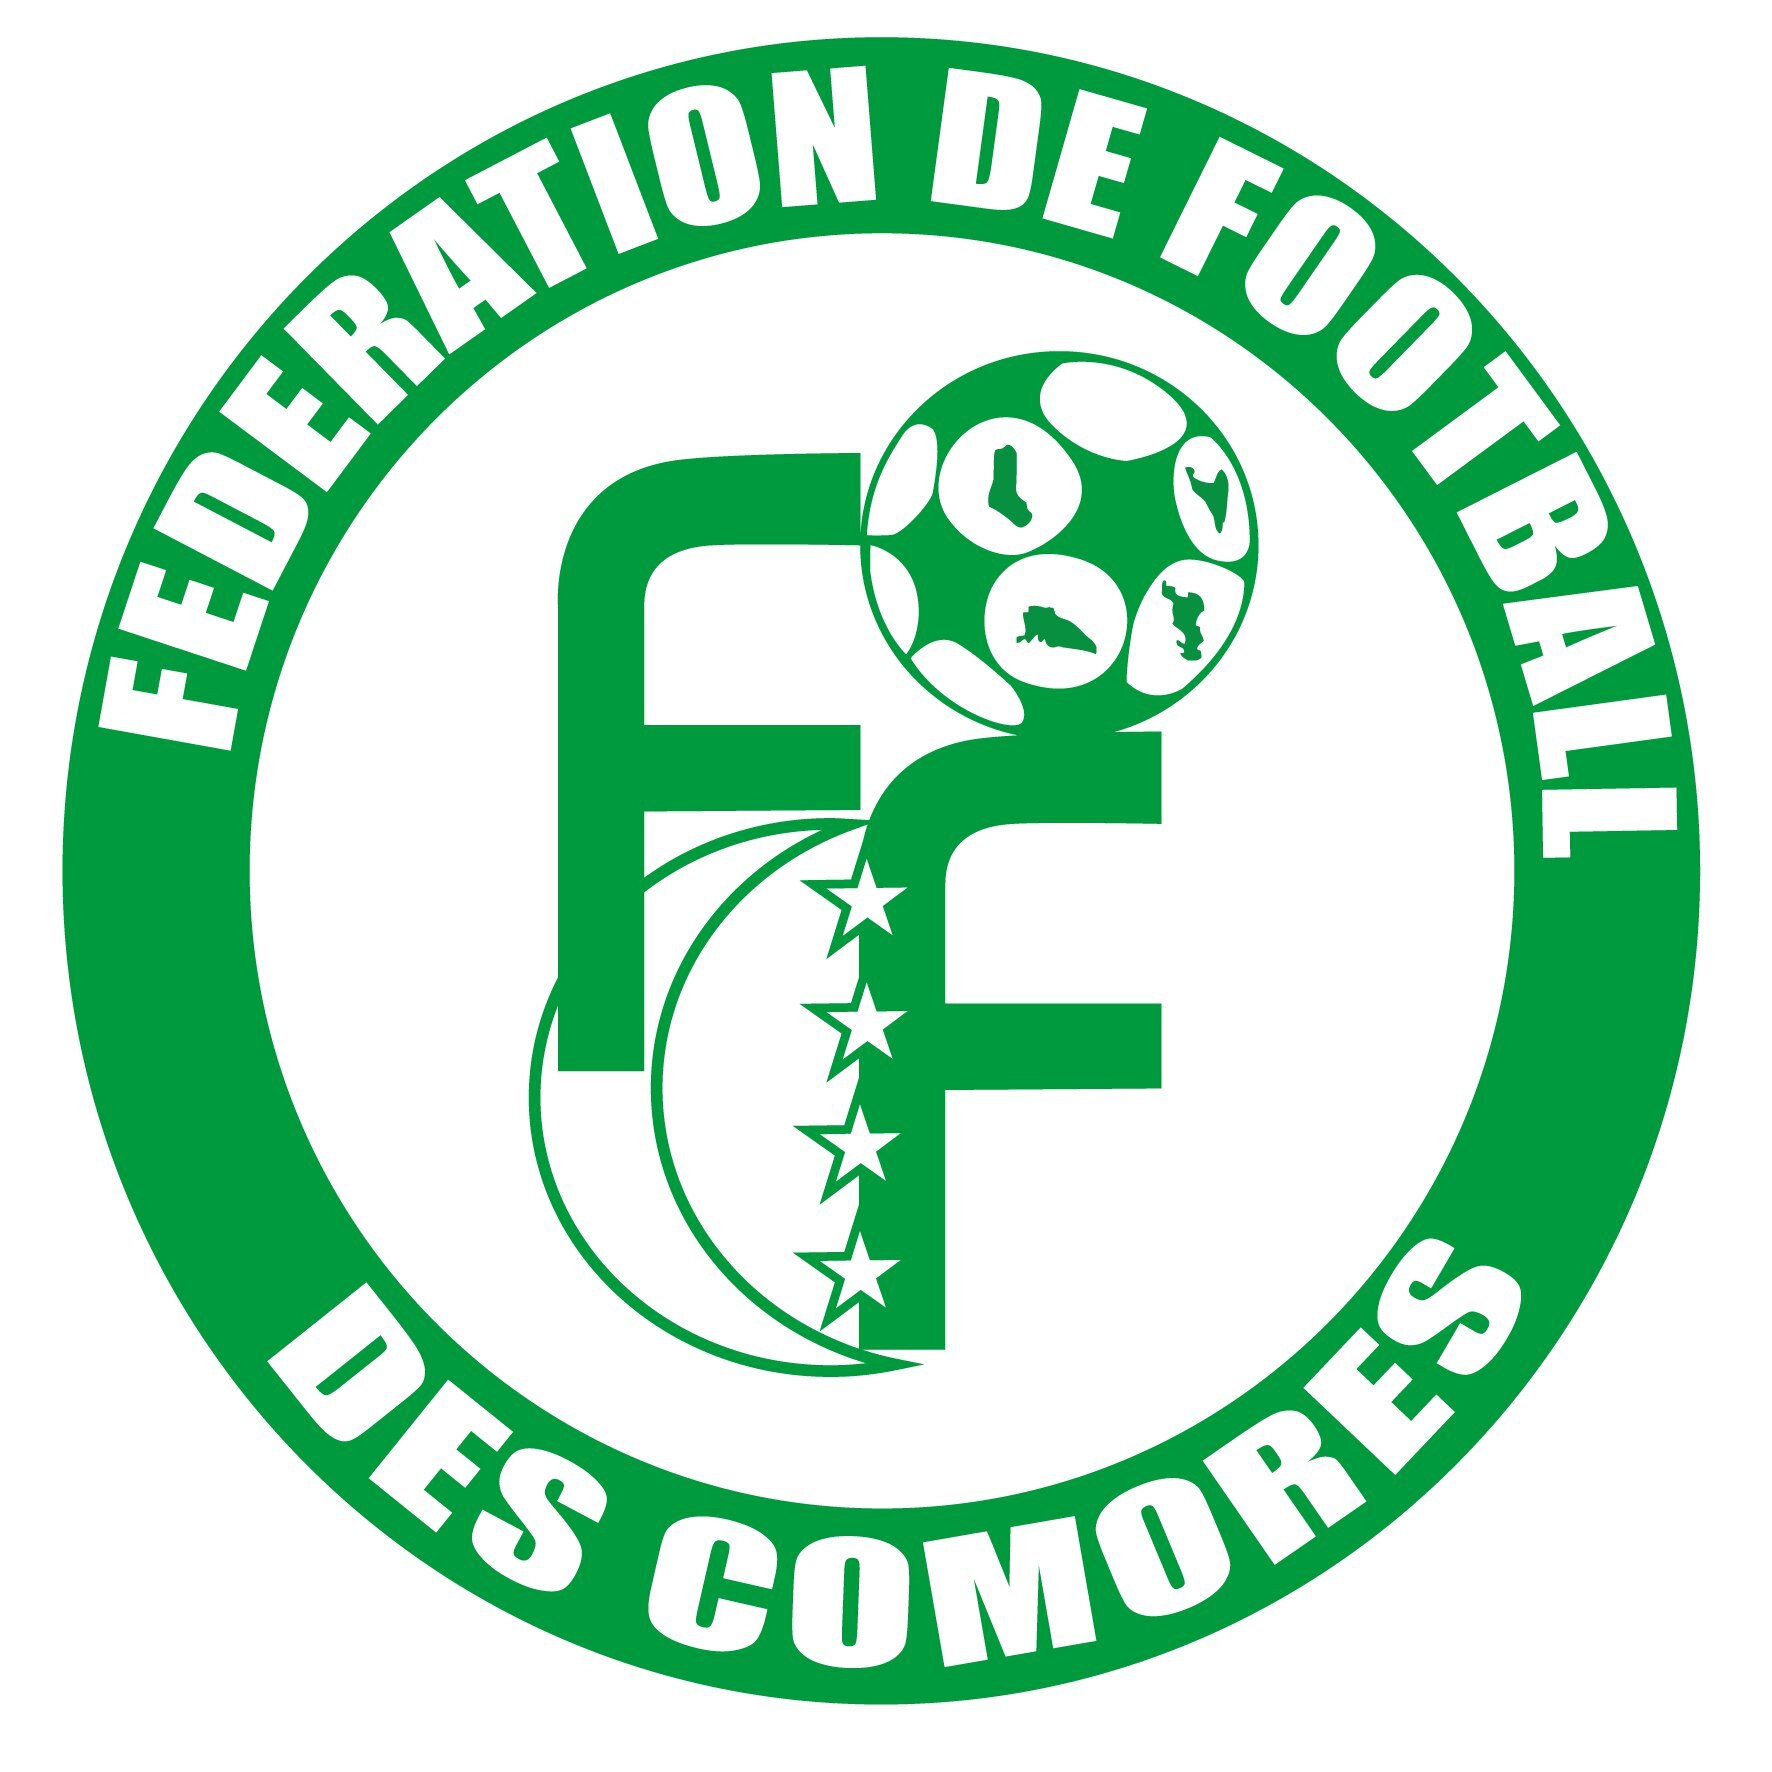 Federation de Football des Comores